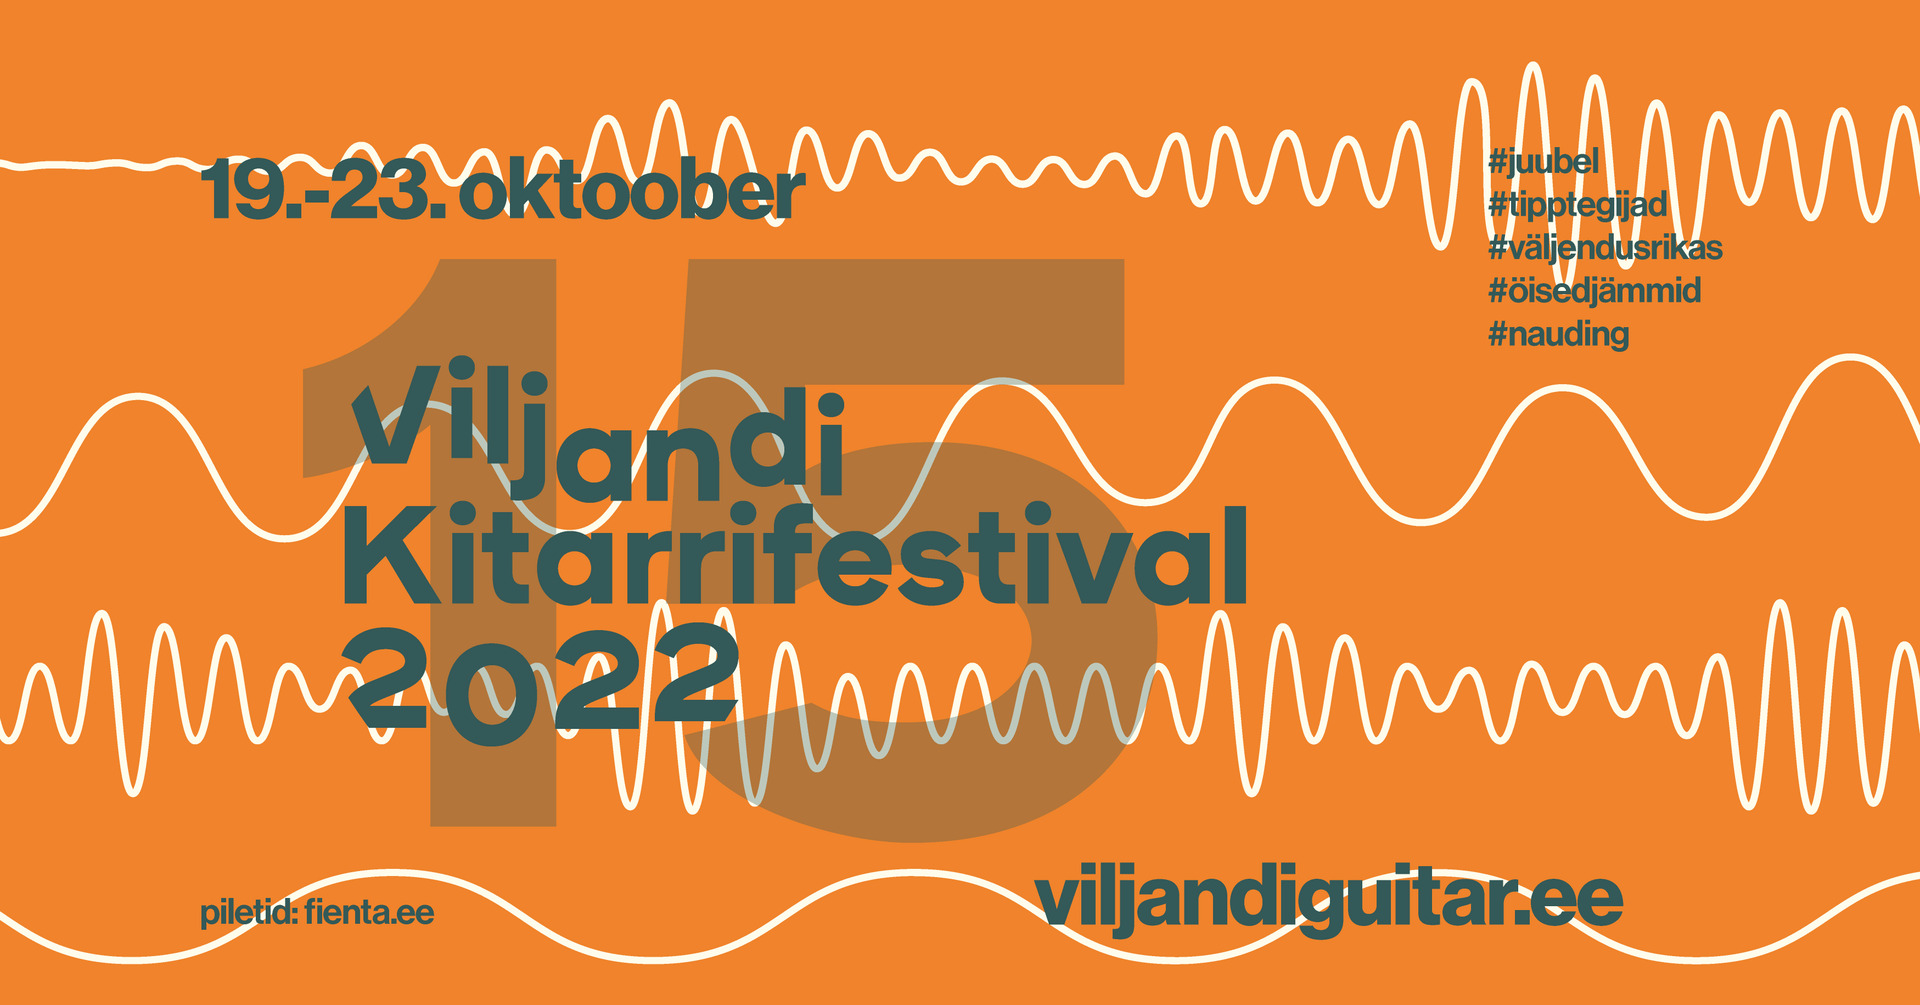 Viljandi Kitarrifestival (Viljandi Kitarrifestival).